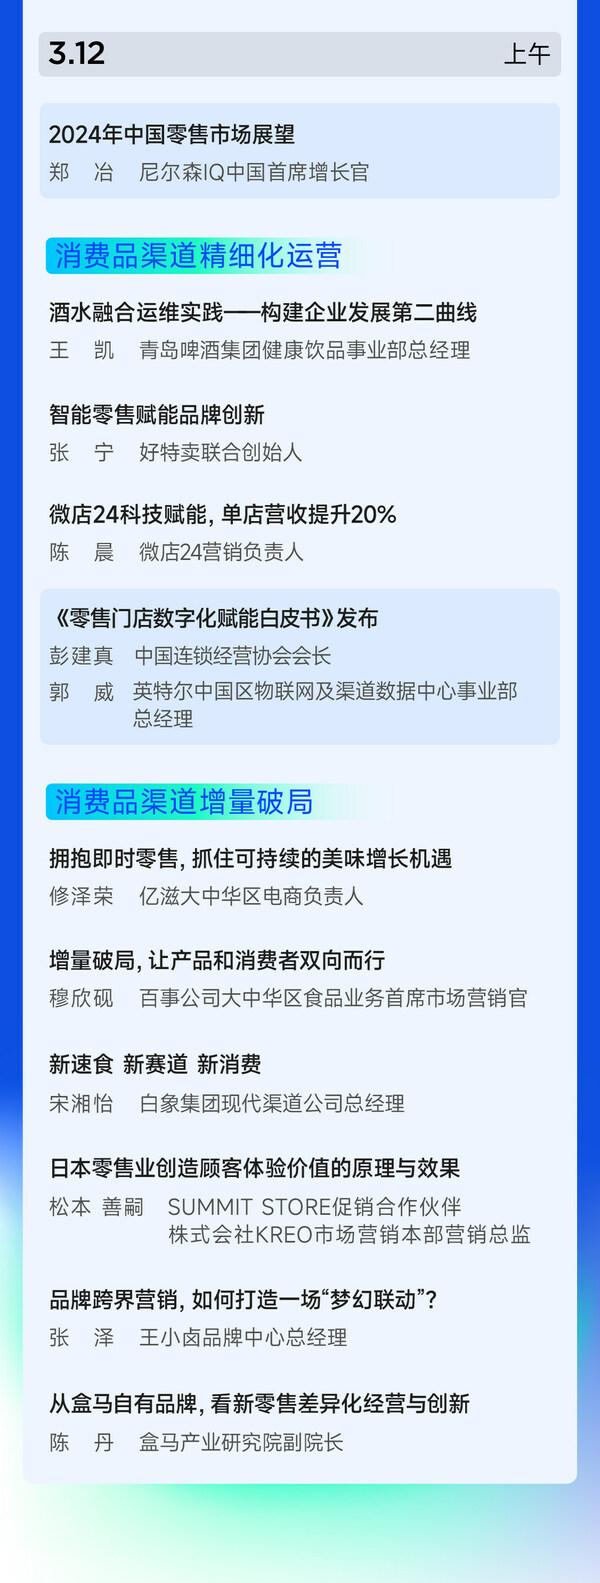 日程公布 消费品渠道营销创新峰会3月11-12日上海召开